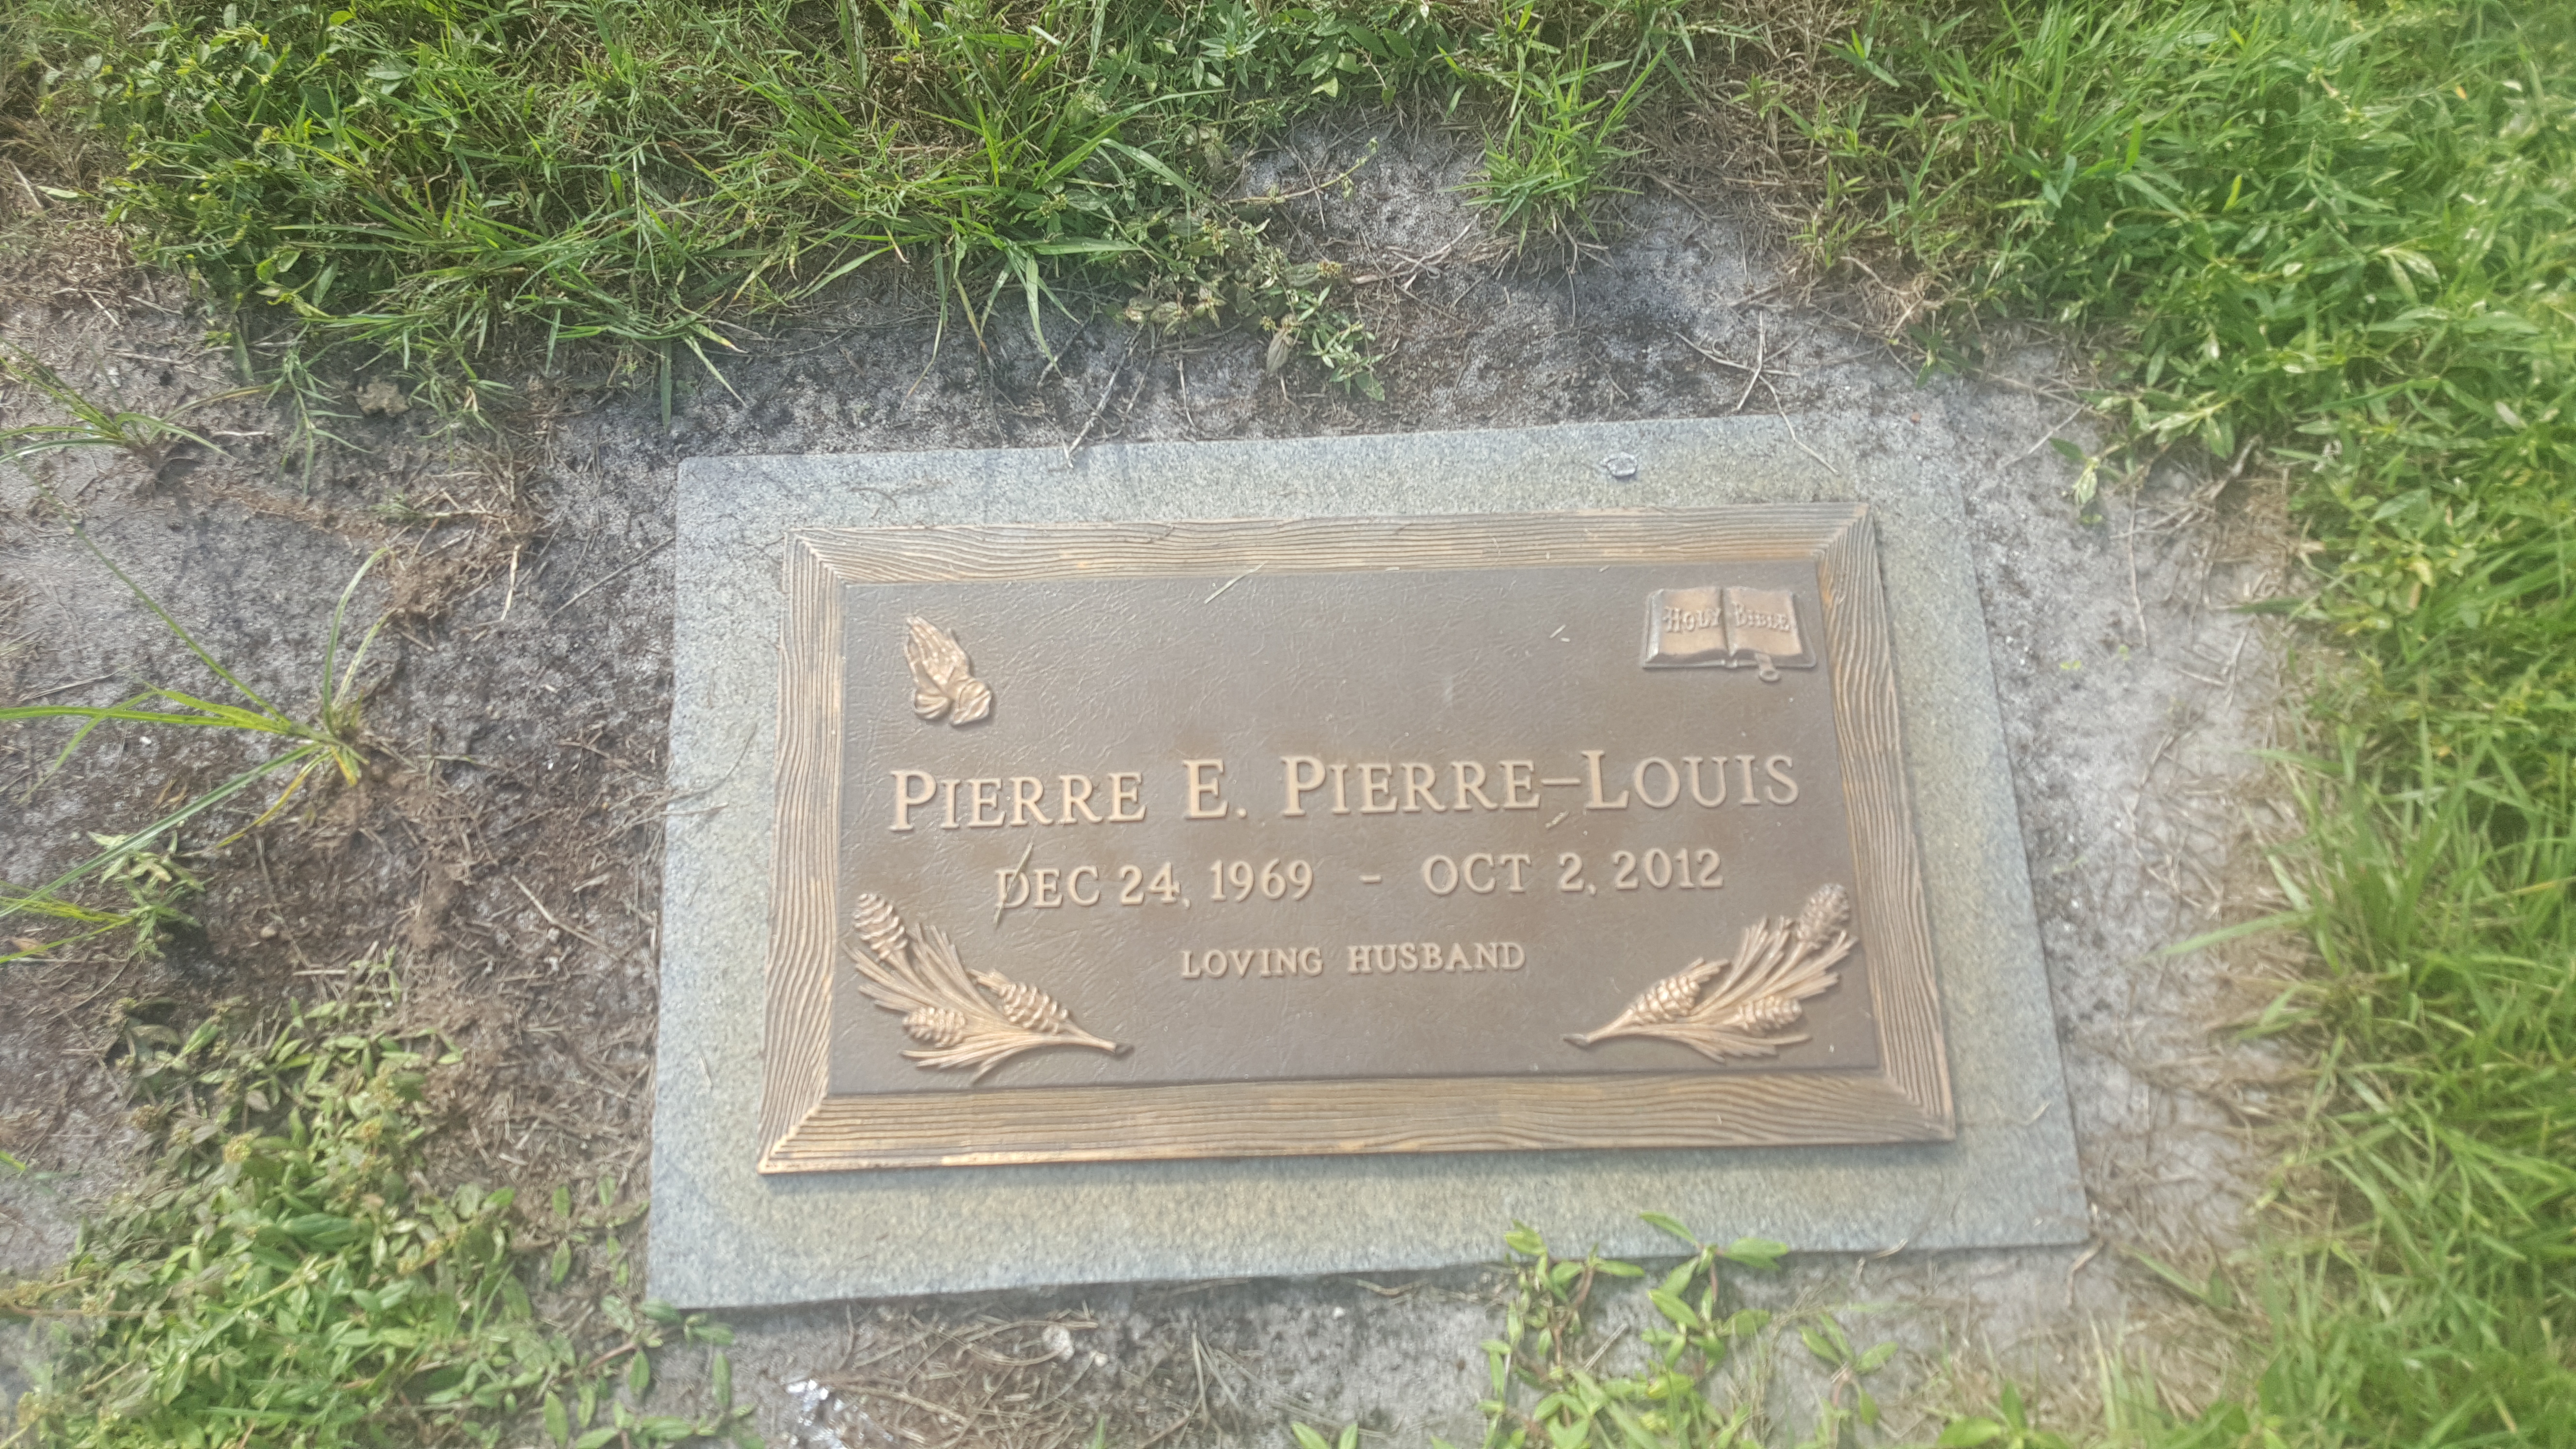 Pierre E Pierre-Louis